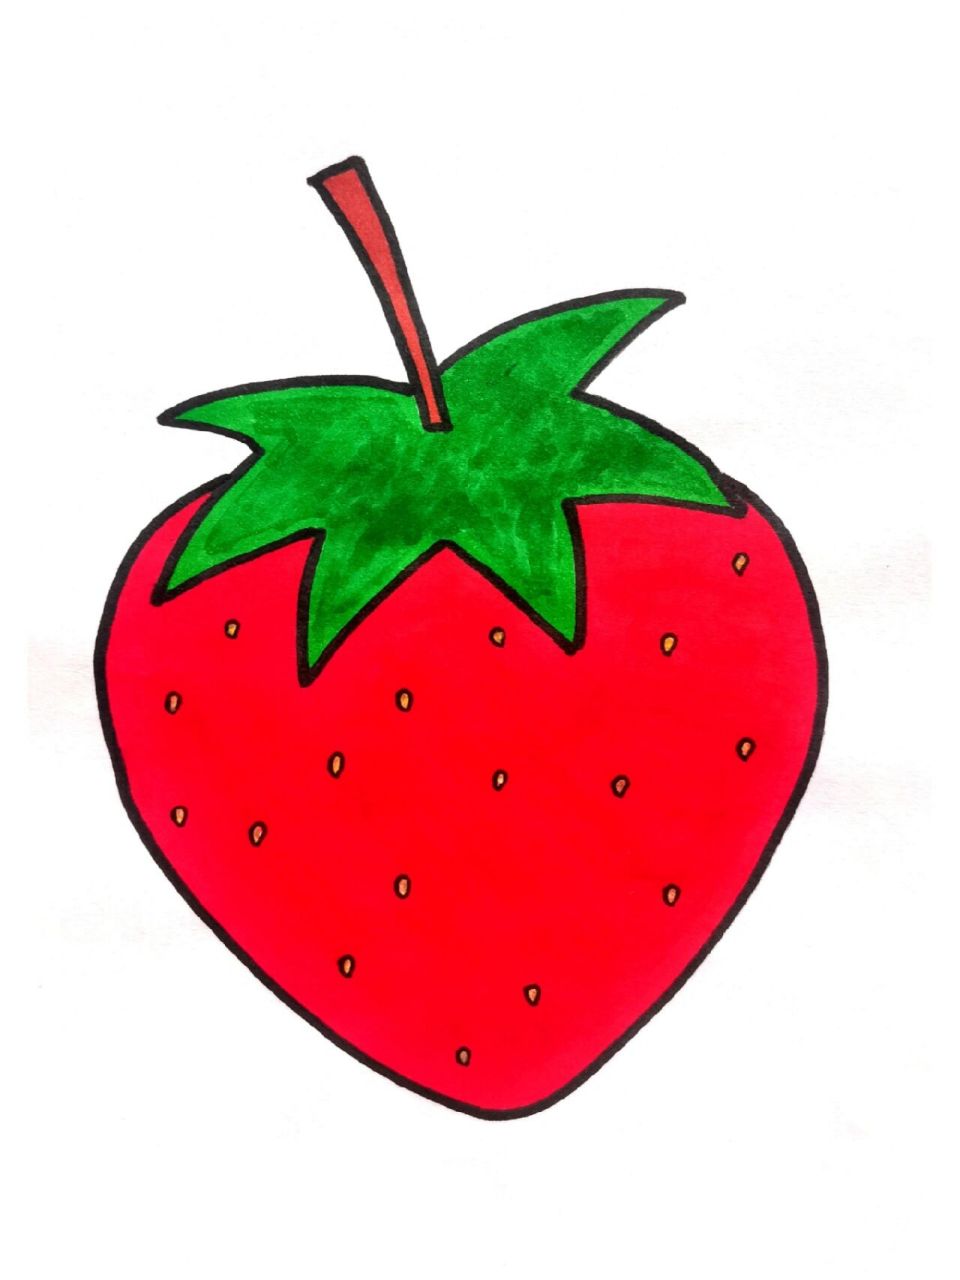 红色水果简笔画 简单图片